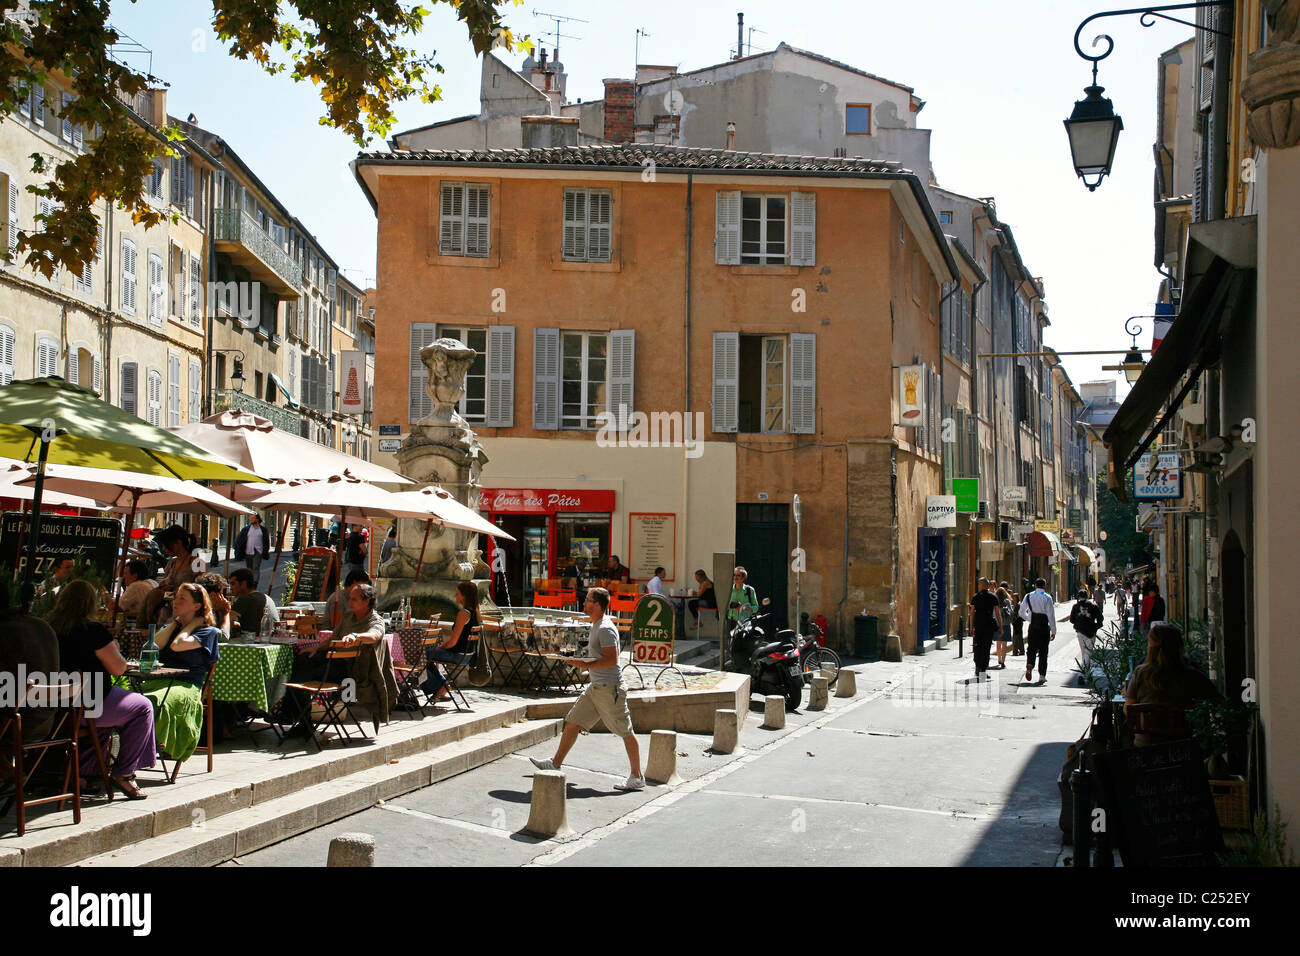 Restaurant en plein air dans le Vieil Aix, le vieux quartier d'Aix en Provence, Bouches du Rhône, Provence, France. Banque D'Images